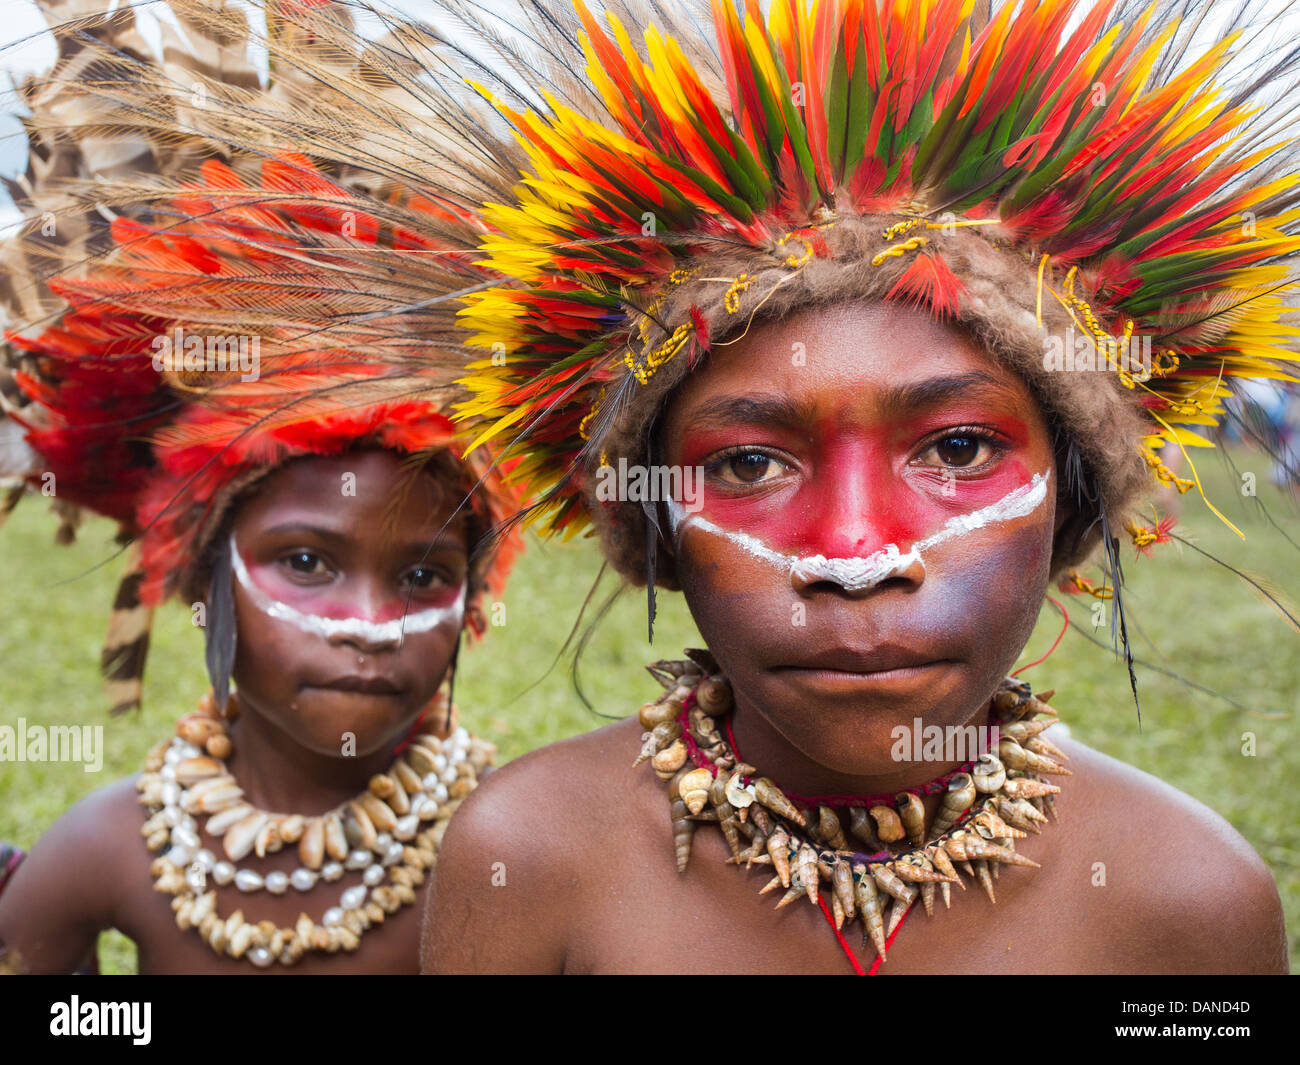 Enfants portant une coiffe de plumes de couleur vive faite de plumes, lorikeet Goroka show, Papouasie Nouvelle Guinée Banque D'Images